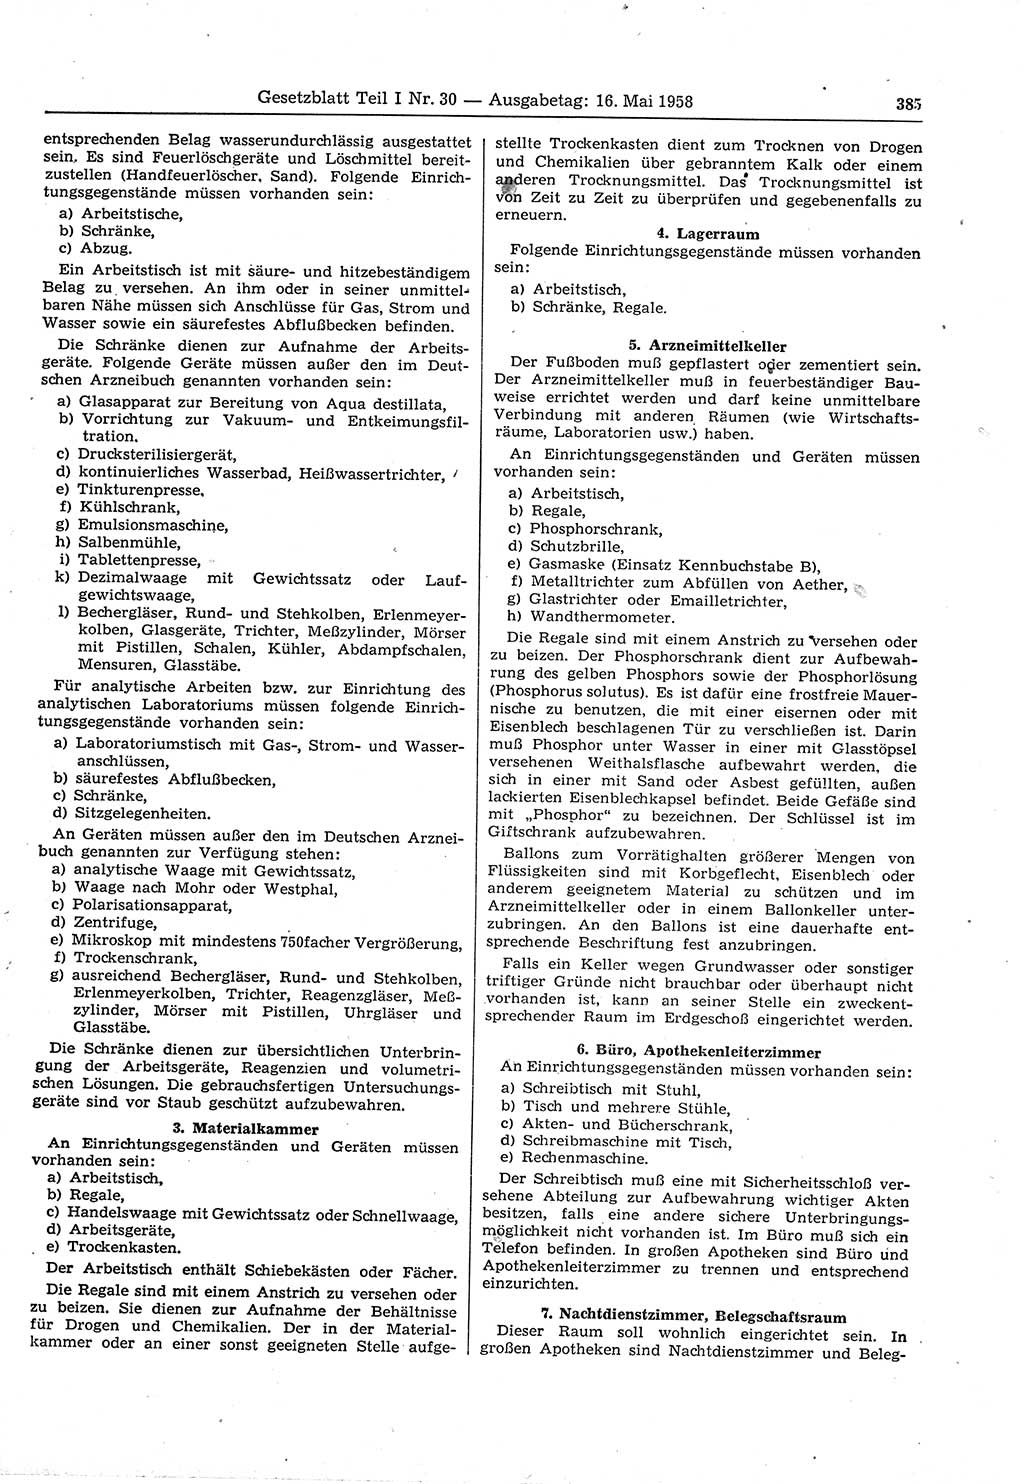 Gesetzblatt (GBl.) der Deutschen Demokratischen Republik (DDR) Teil Ⅰ 1958, Seite 385 (GBl. DDR Ⅰ 1958, S. 385)